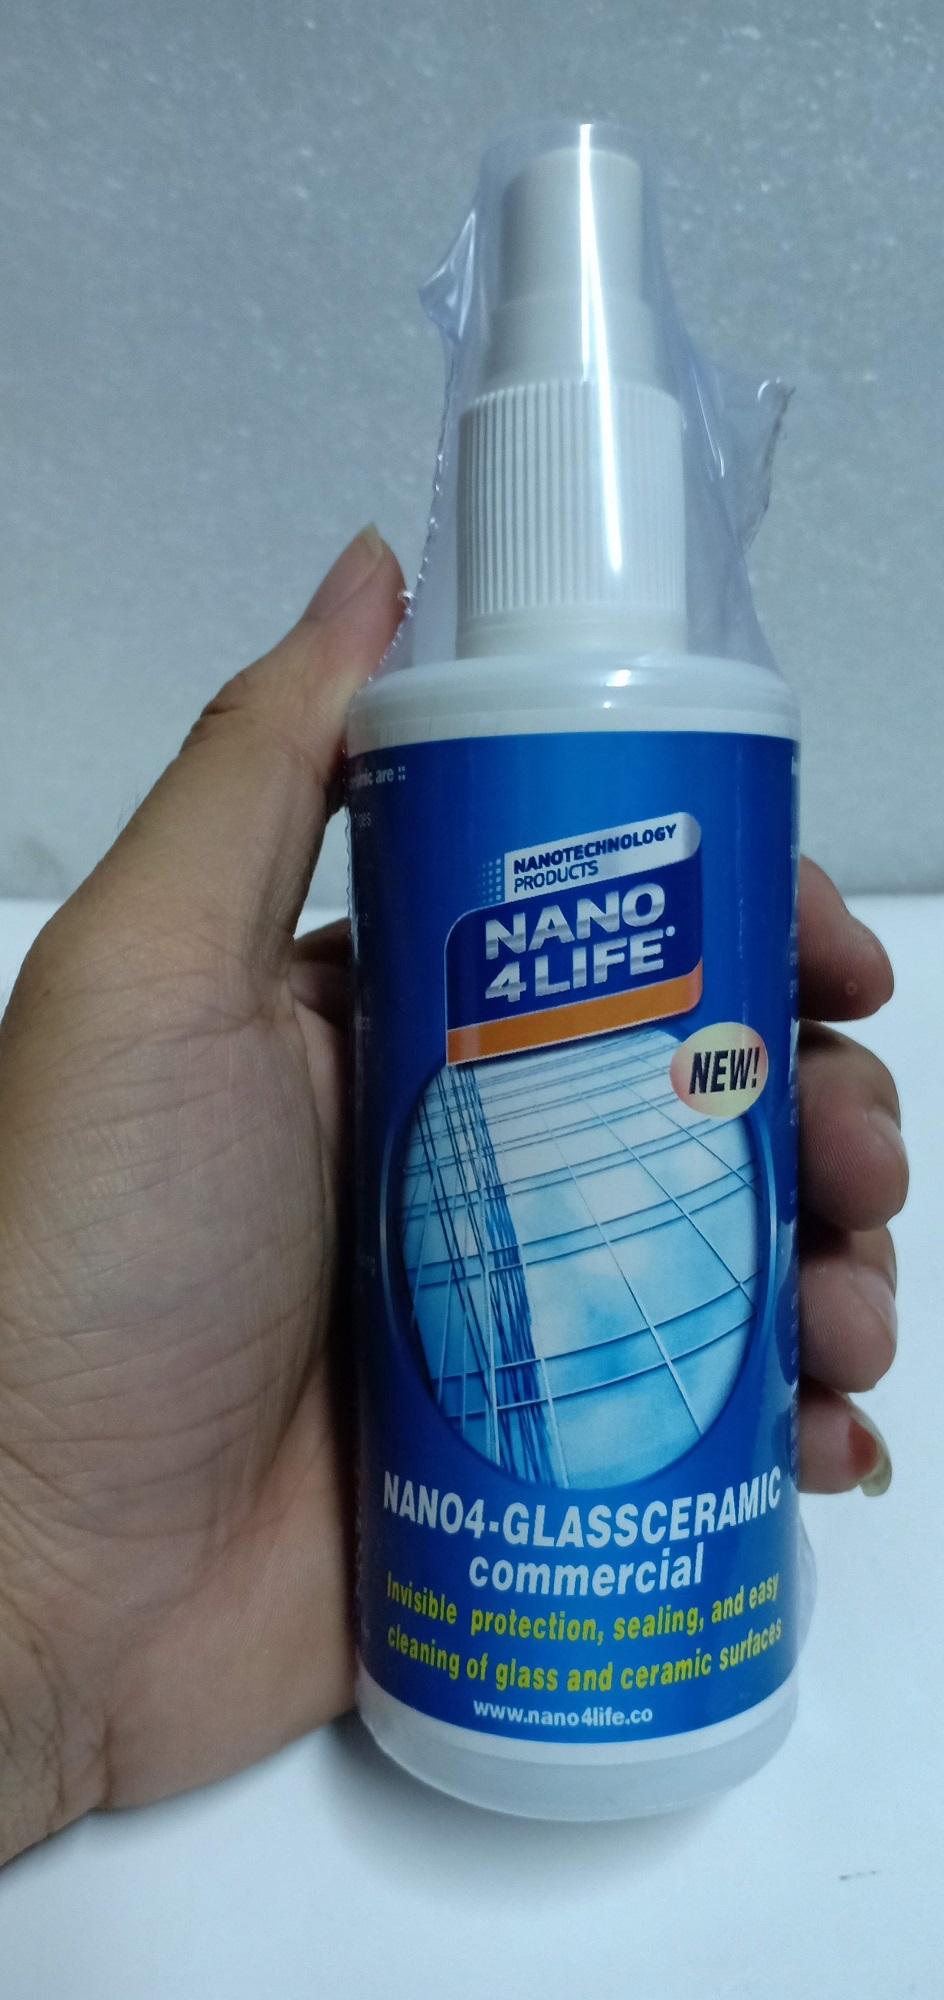 Nano4-Glass Ceramic: Nano bảo vệ cho kính trong nhà và ngoài nhà (200ml)